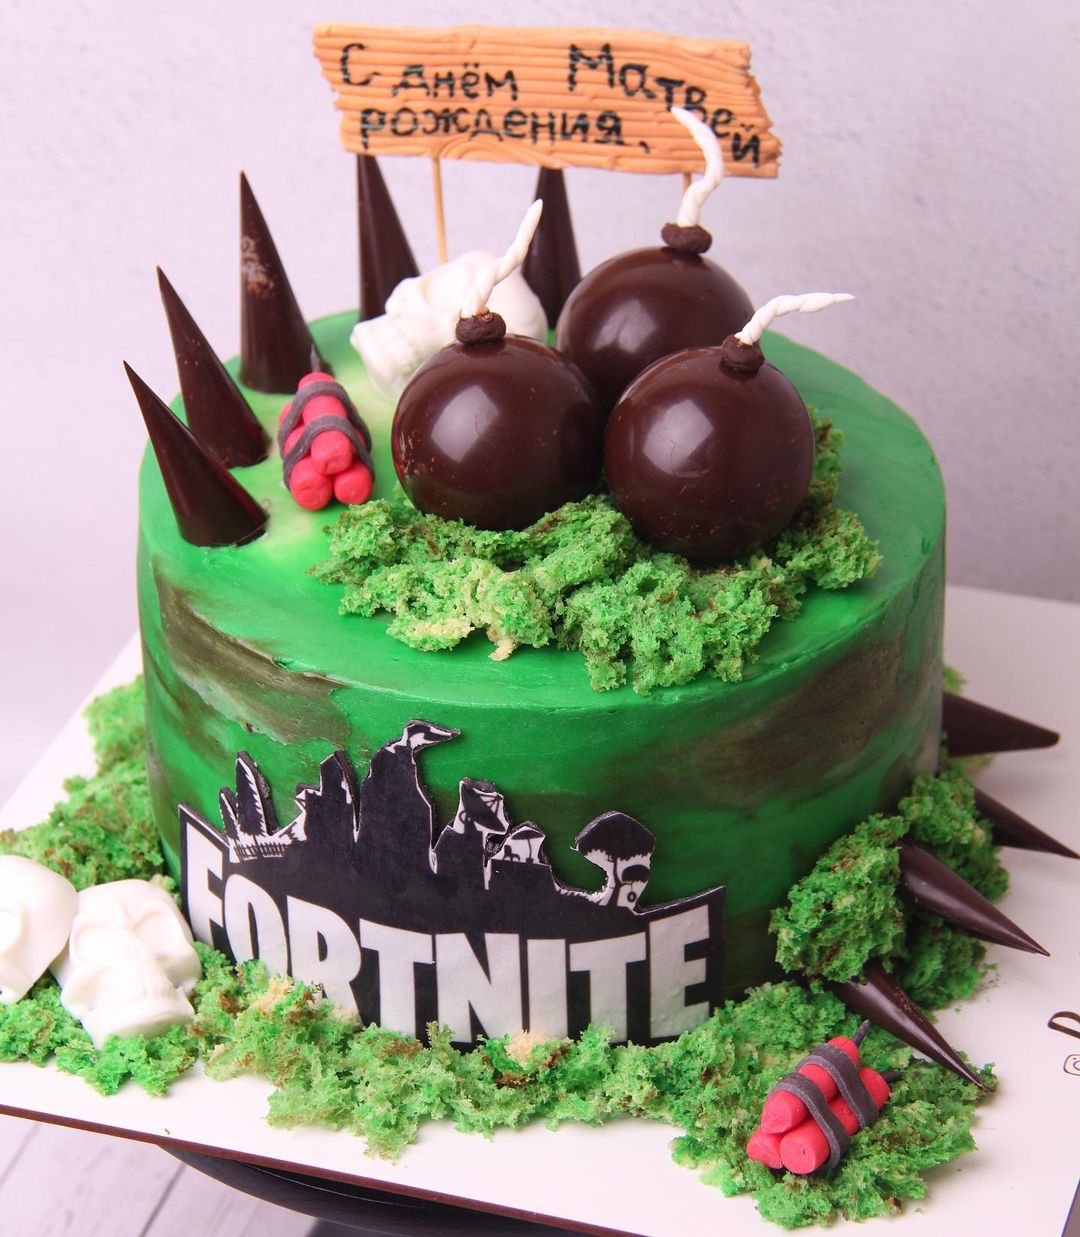 Торт "Fortnite" | Фото №2